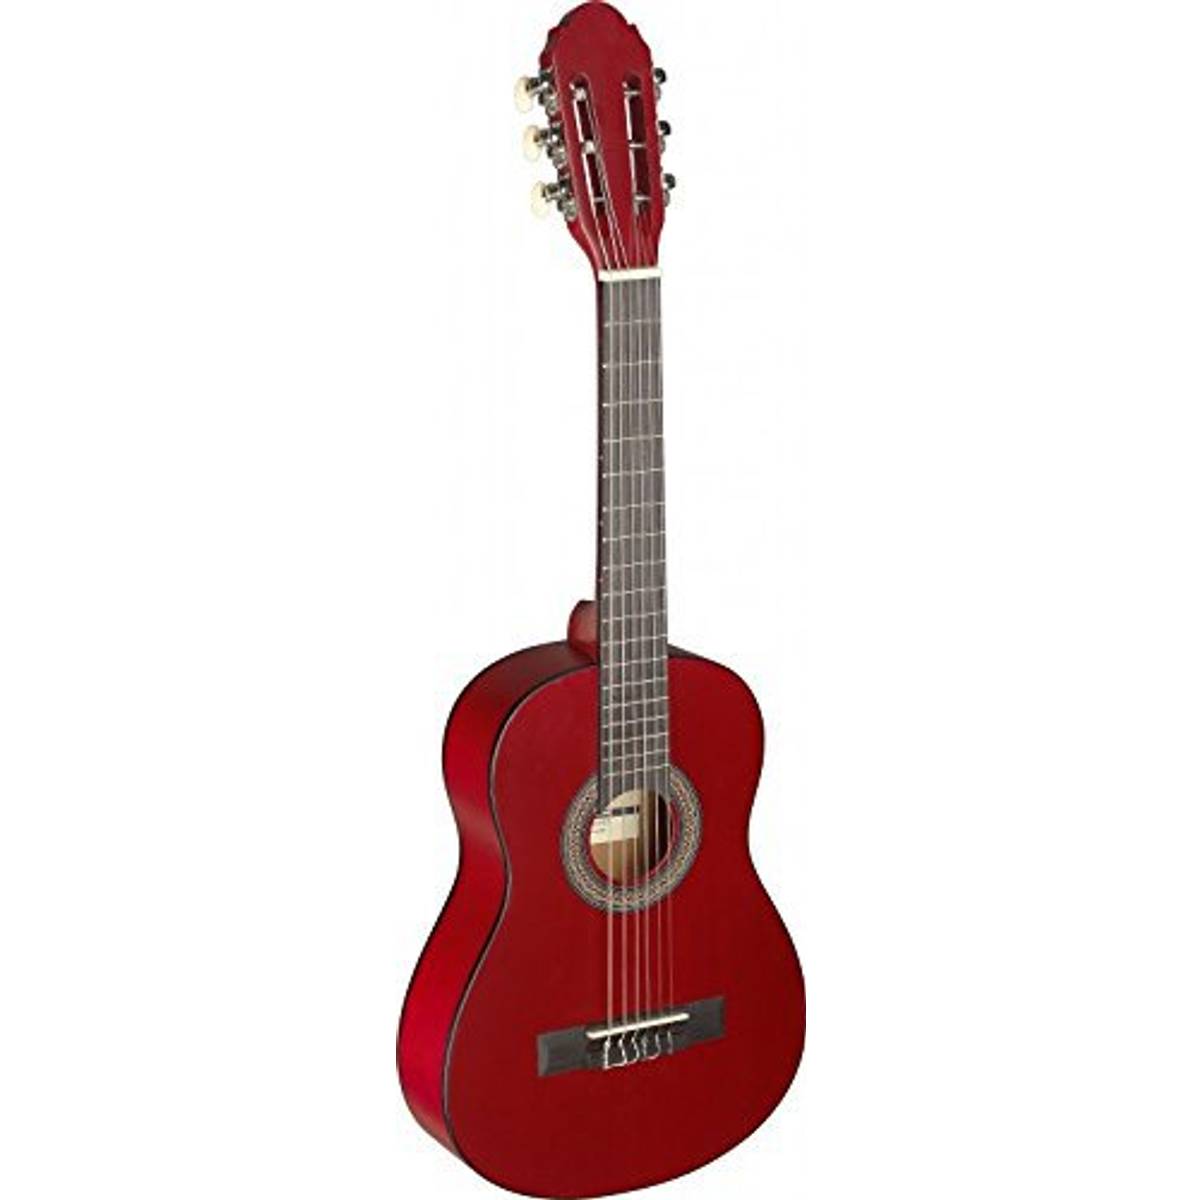 Stagg Akustisk gitarr (20 produkter) hos PriceRunner • Se priser nu »